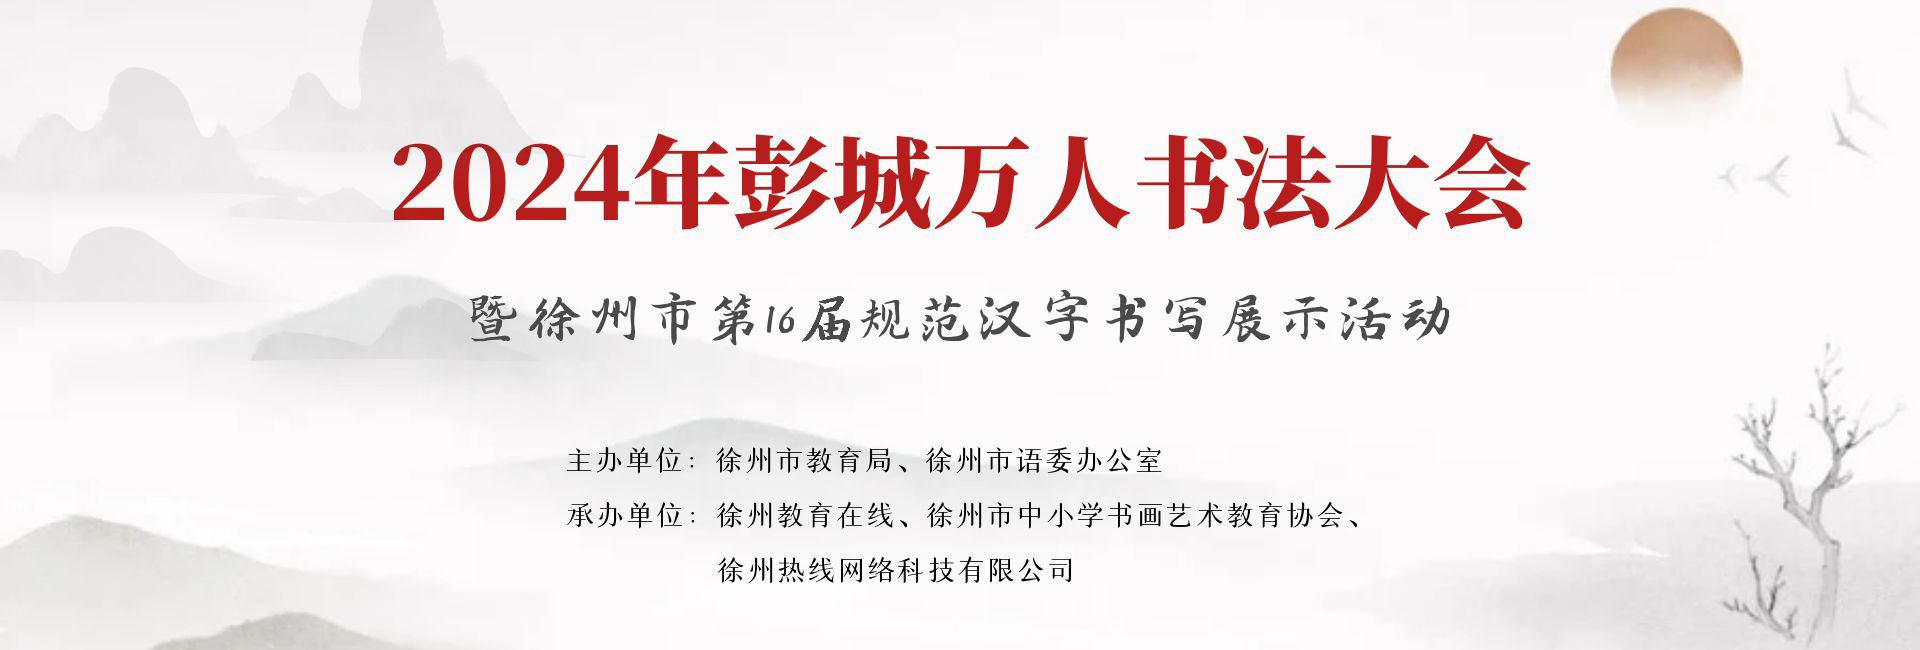 2024年彭城万人书法大会暨徐州市第16届规范汉字书写展示活动